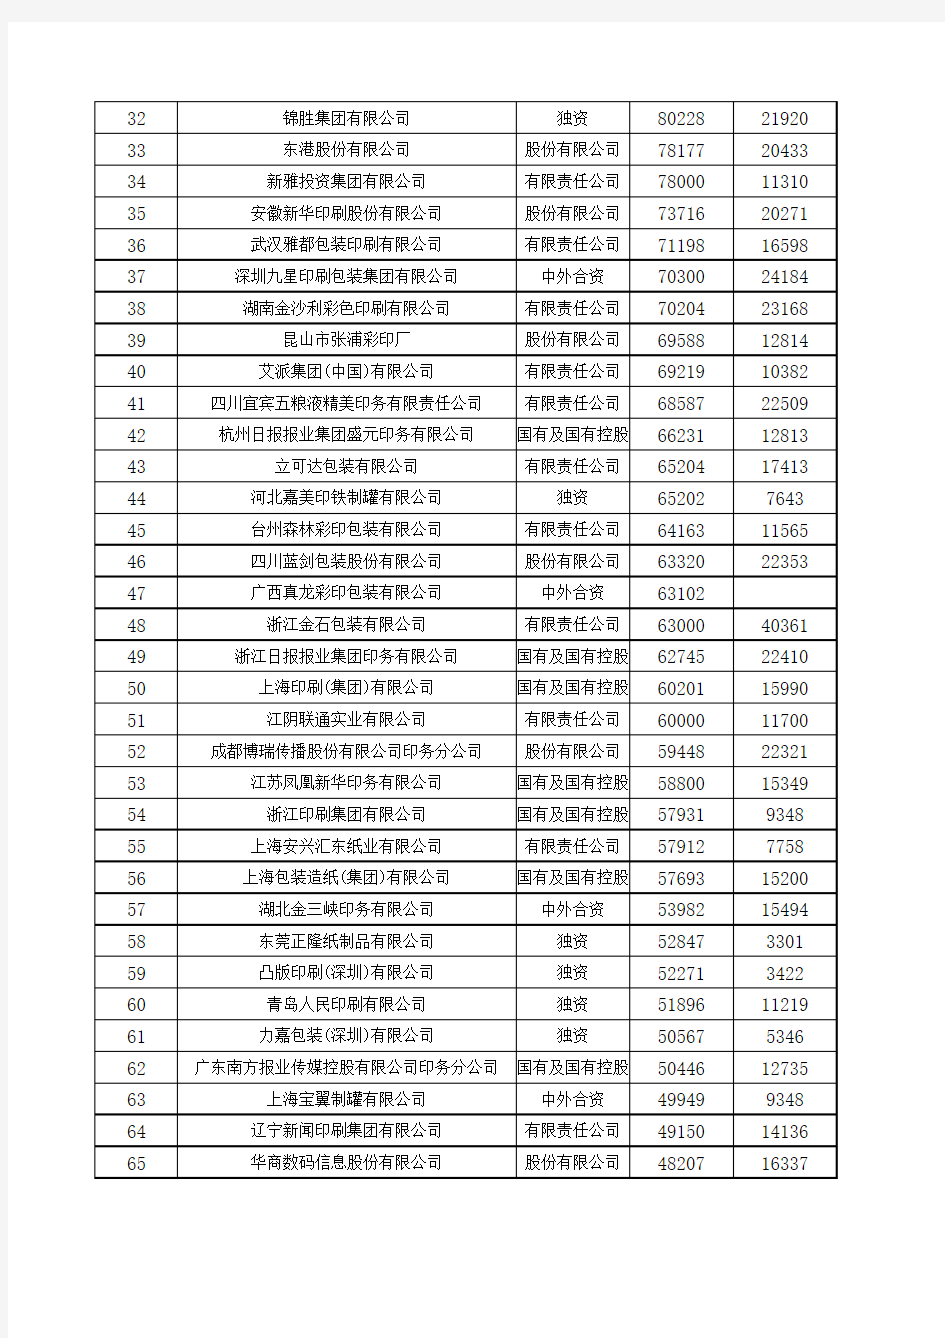 上海印刷公司100强排行榜